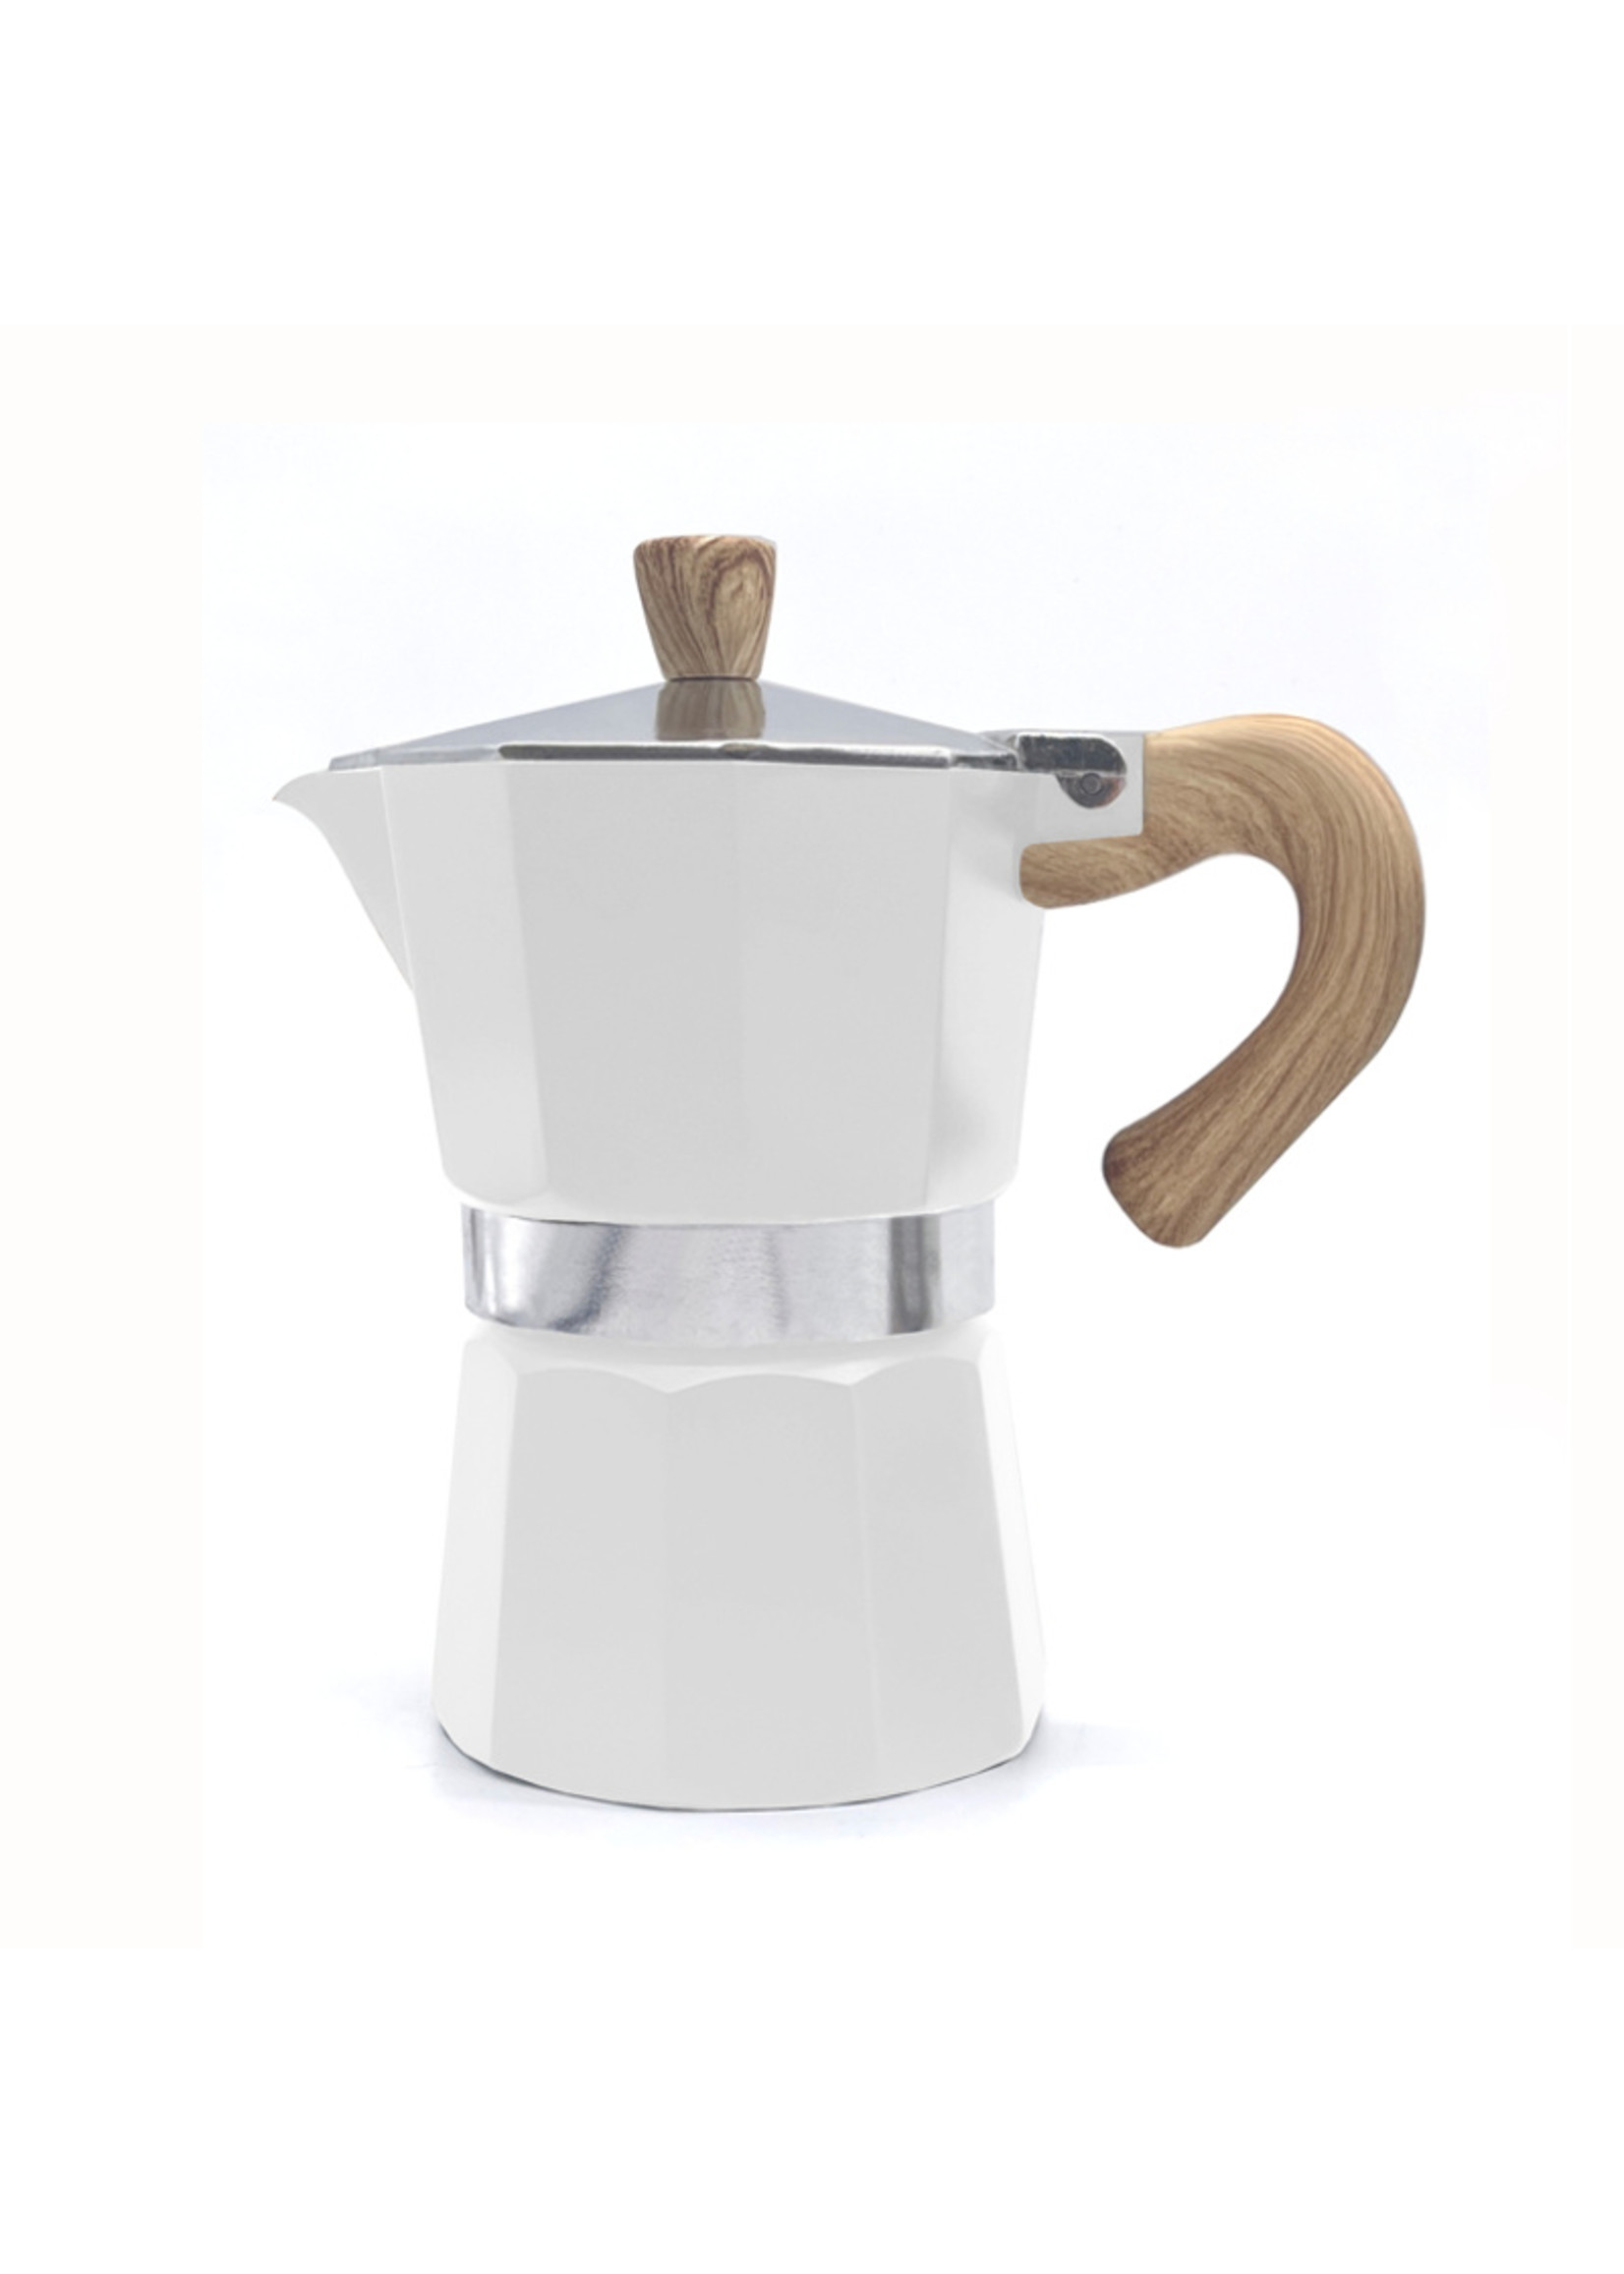 Danesco 3-cup Stovetop Espresso Maker, White